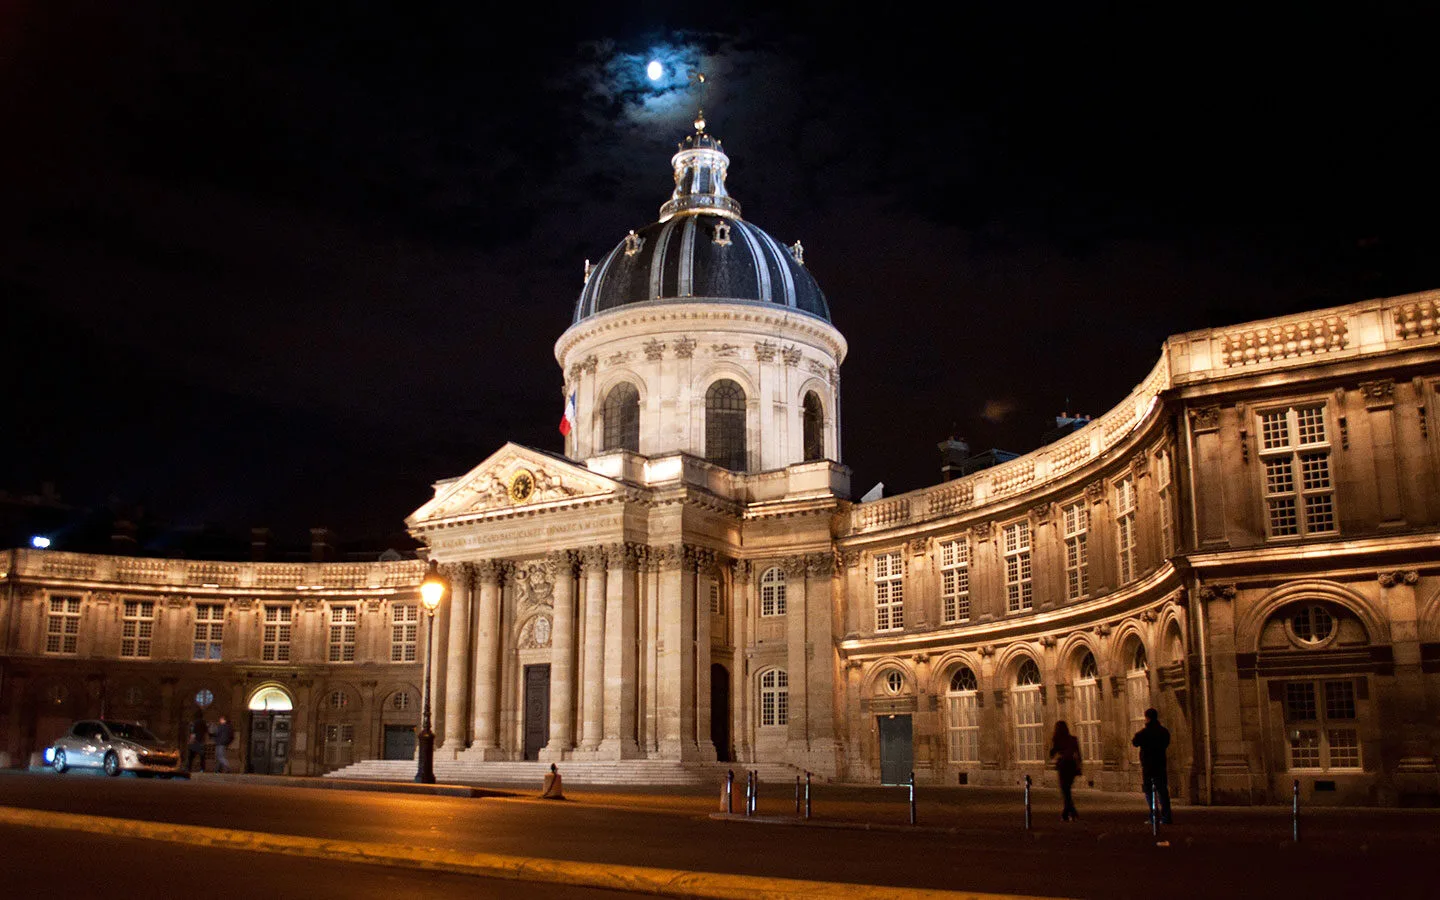 The Institut de France in Paris